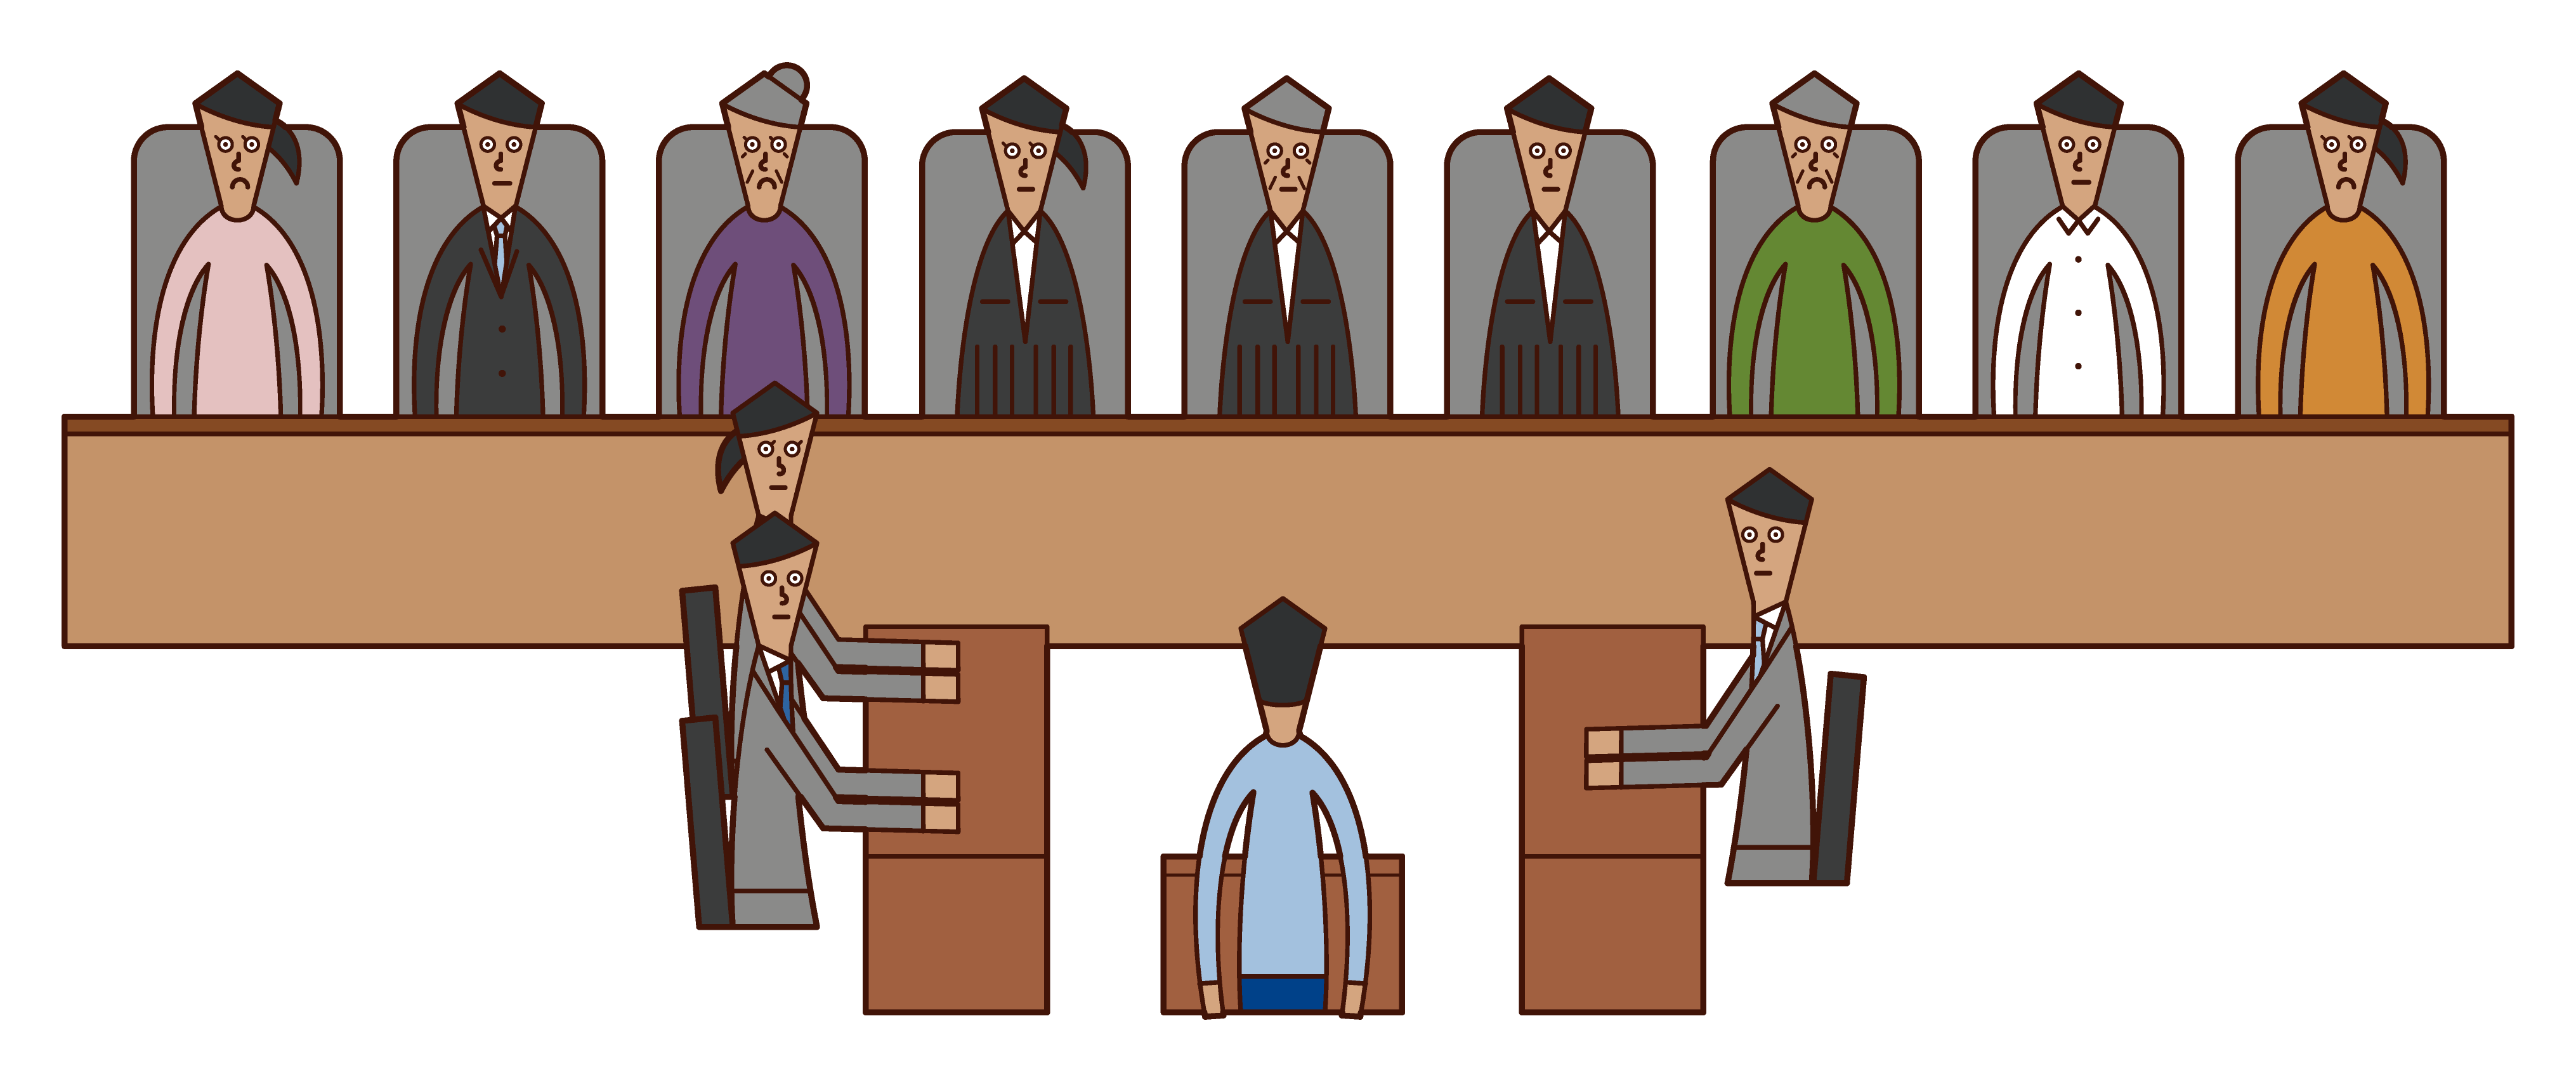 판사 제도의 삽화